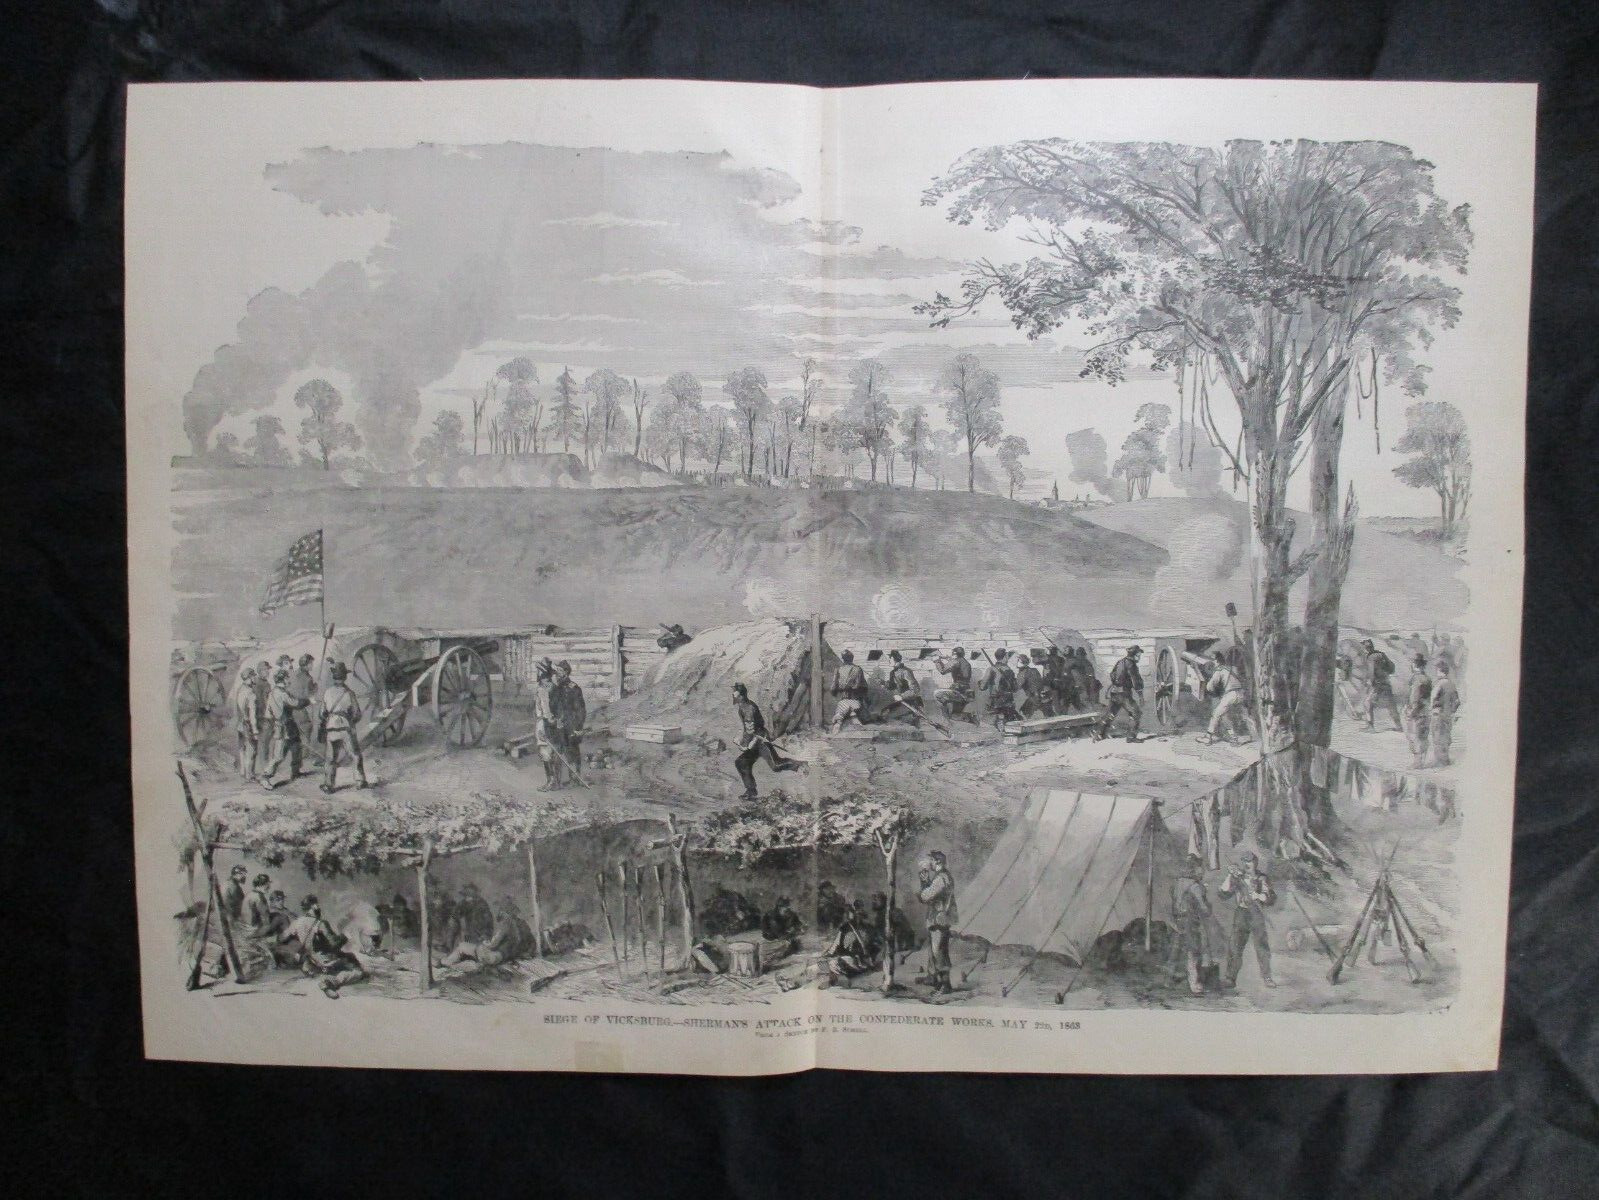 1885 Civil War Print - Sherman Attacks Confederate Works at Vicksburg, Miss.